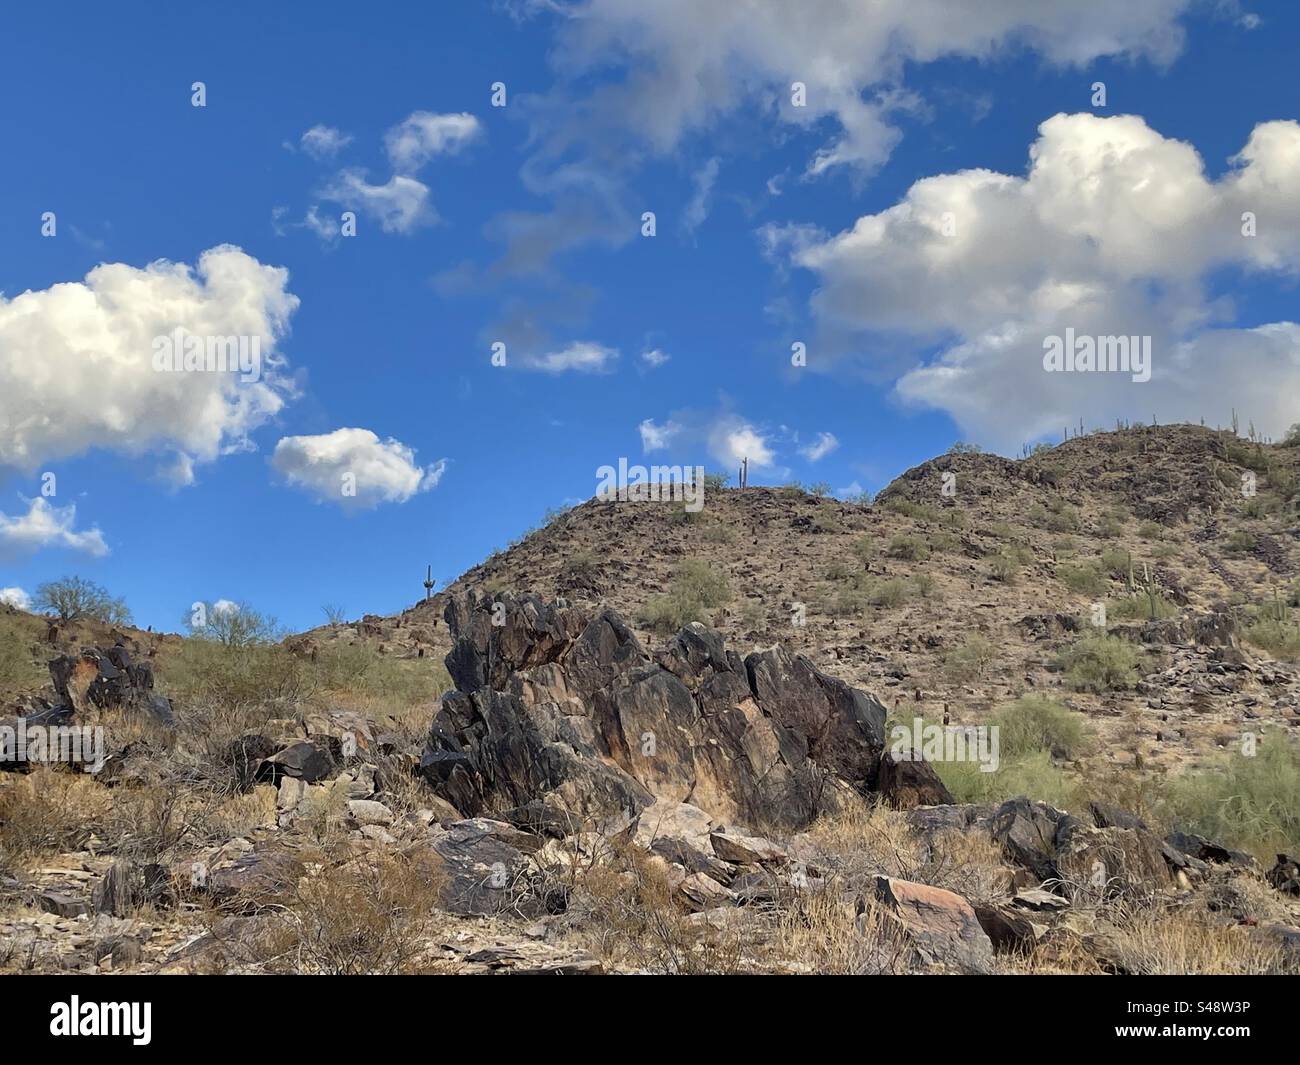 Ciel bleu et nuages moelleux, cactus Saguaro, affleurements rocheux, désert de Sonoran, réserve des montagnes Phoenix, Arizona Banque D'Images